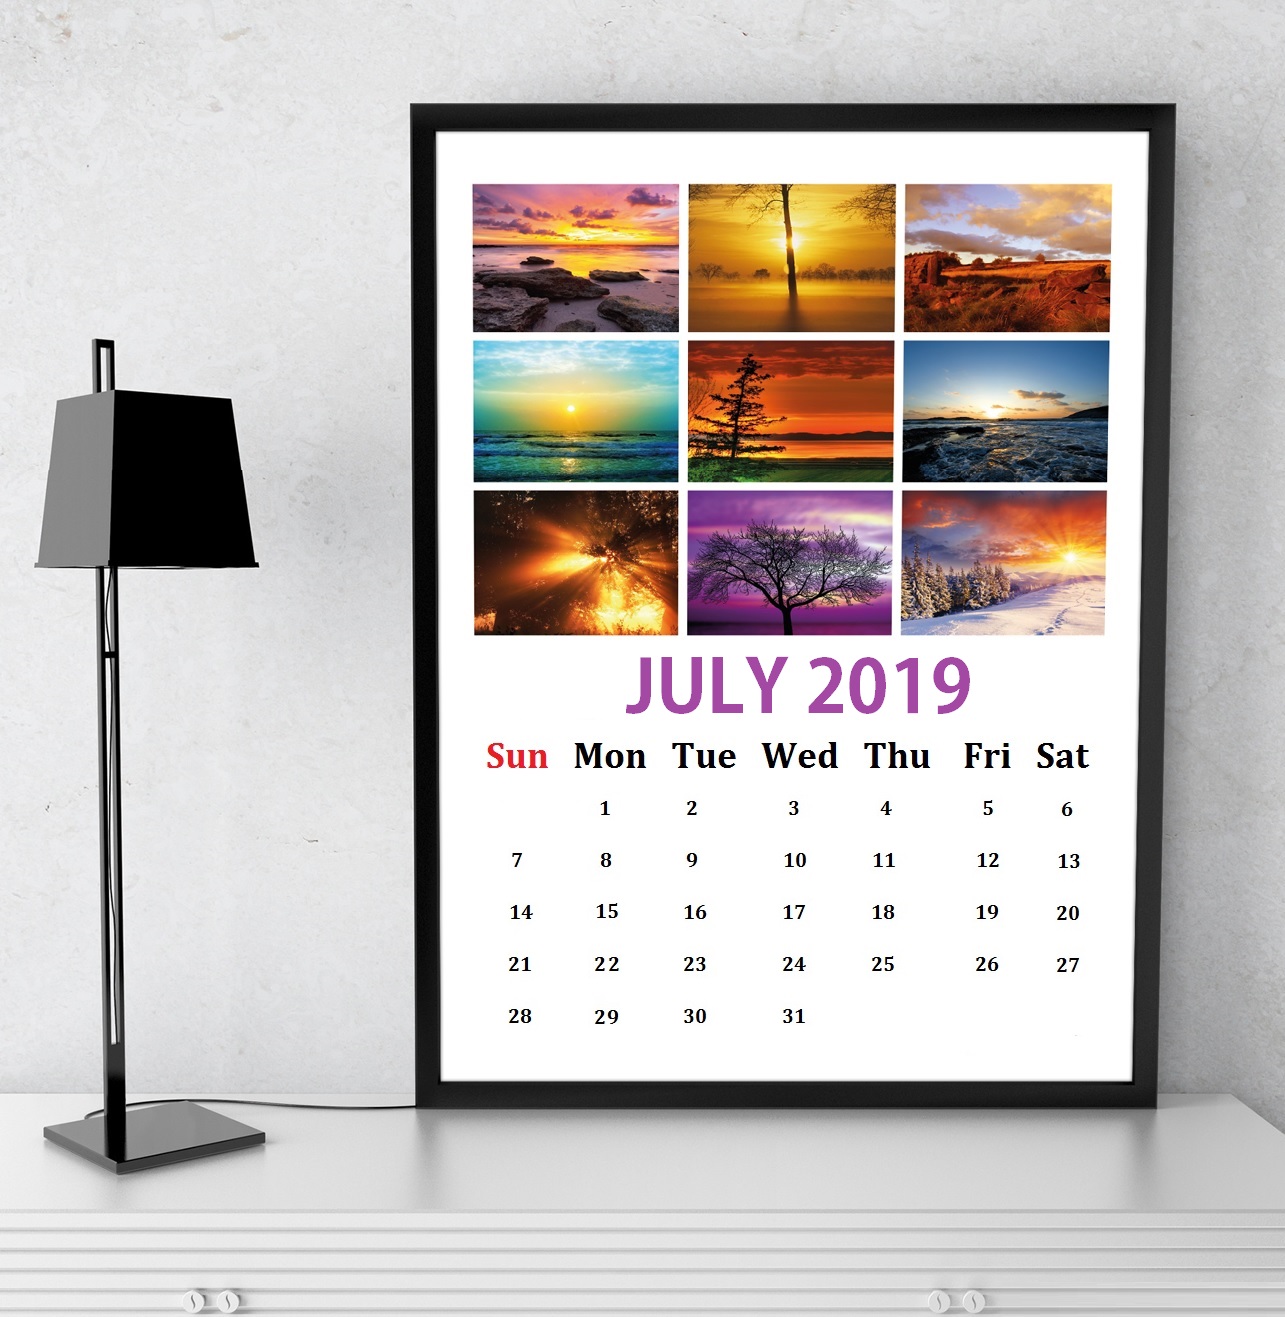 July 2019 Wall Calendar Design